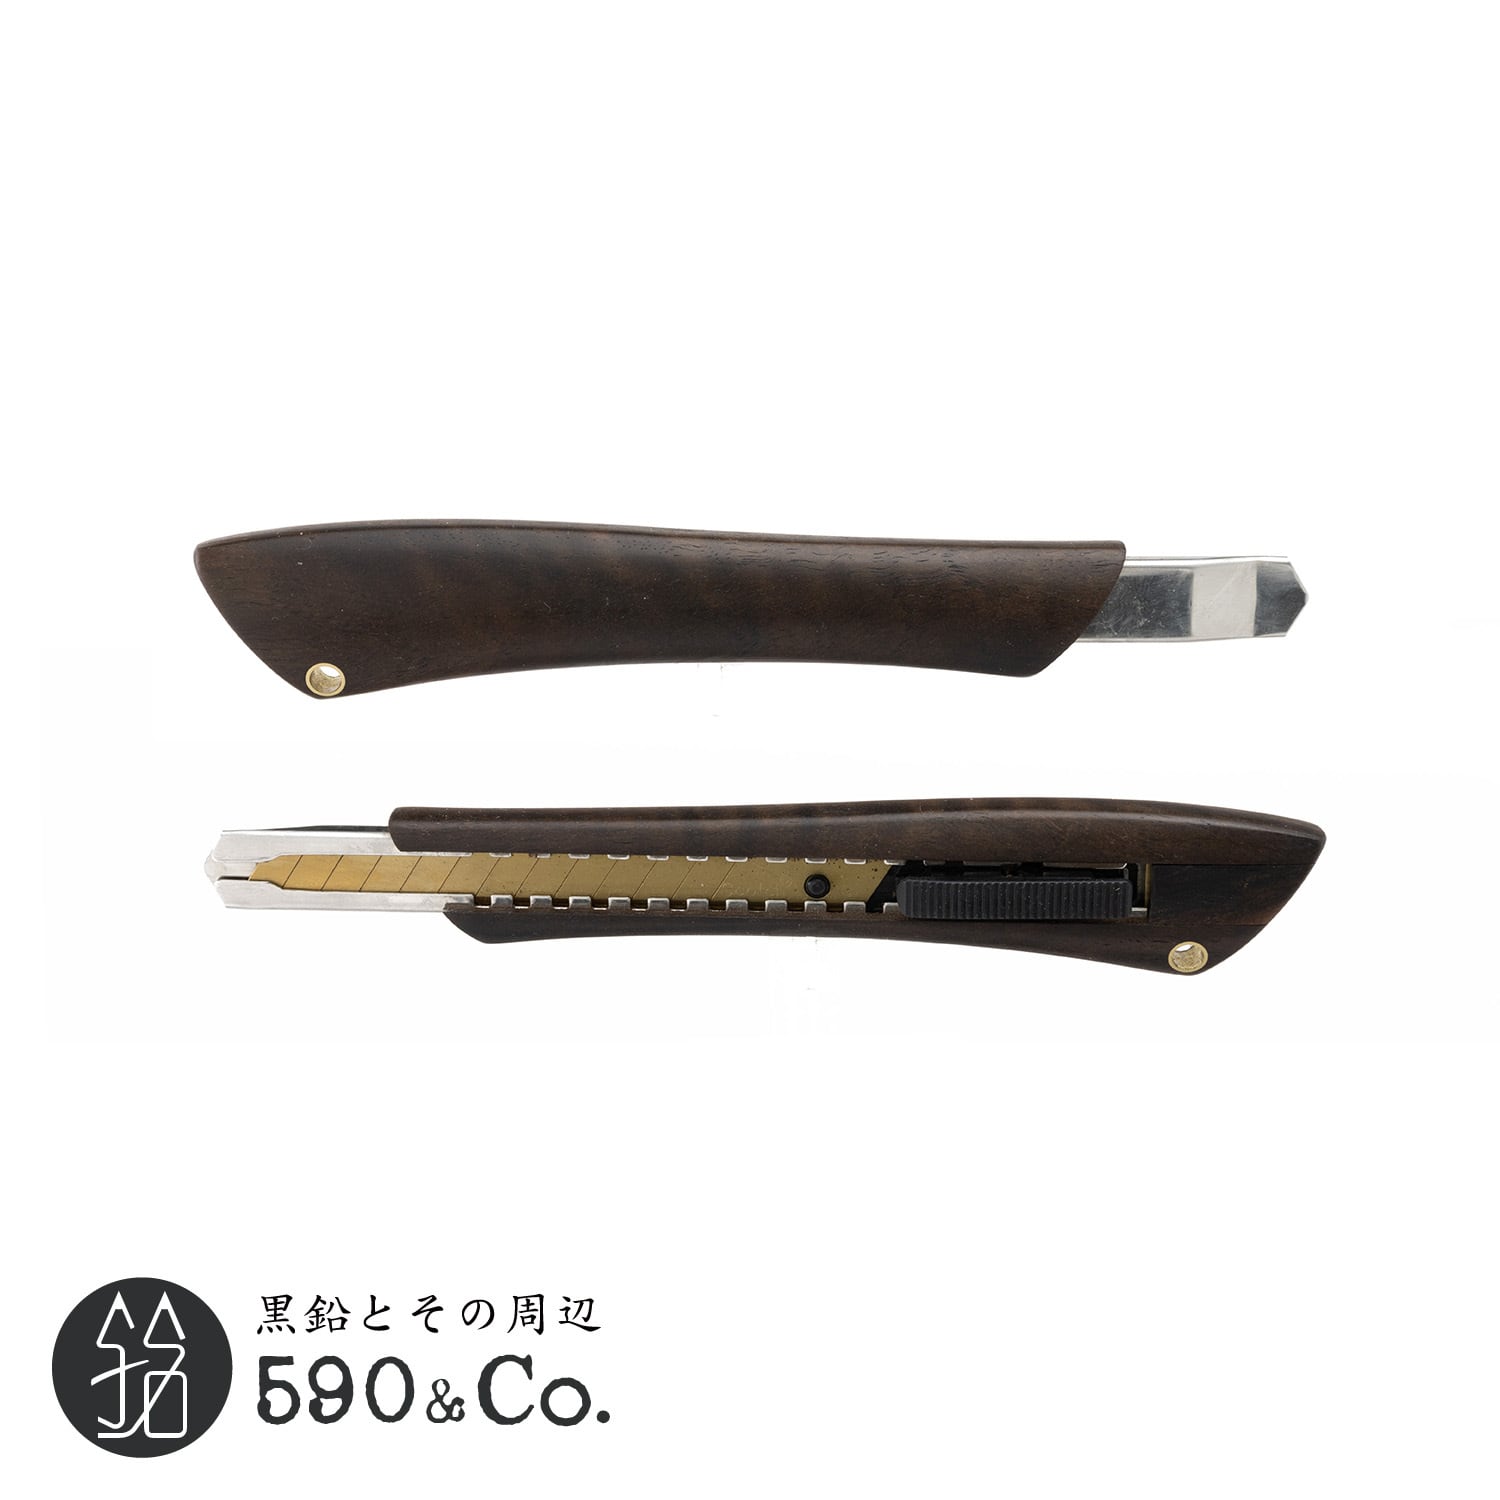 【Flamberg/フランベルク】木製カッターナイフS型 (黒柿) A | 590&Co.